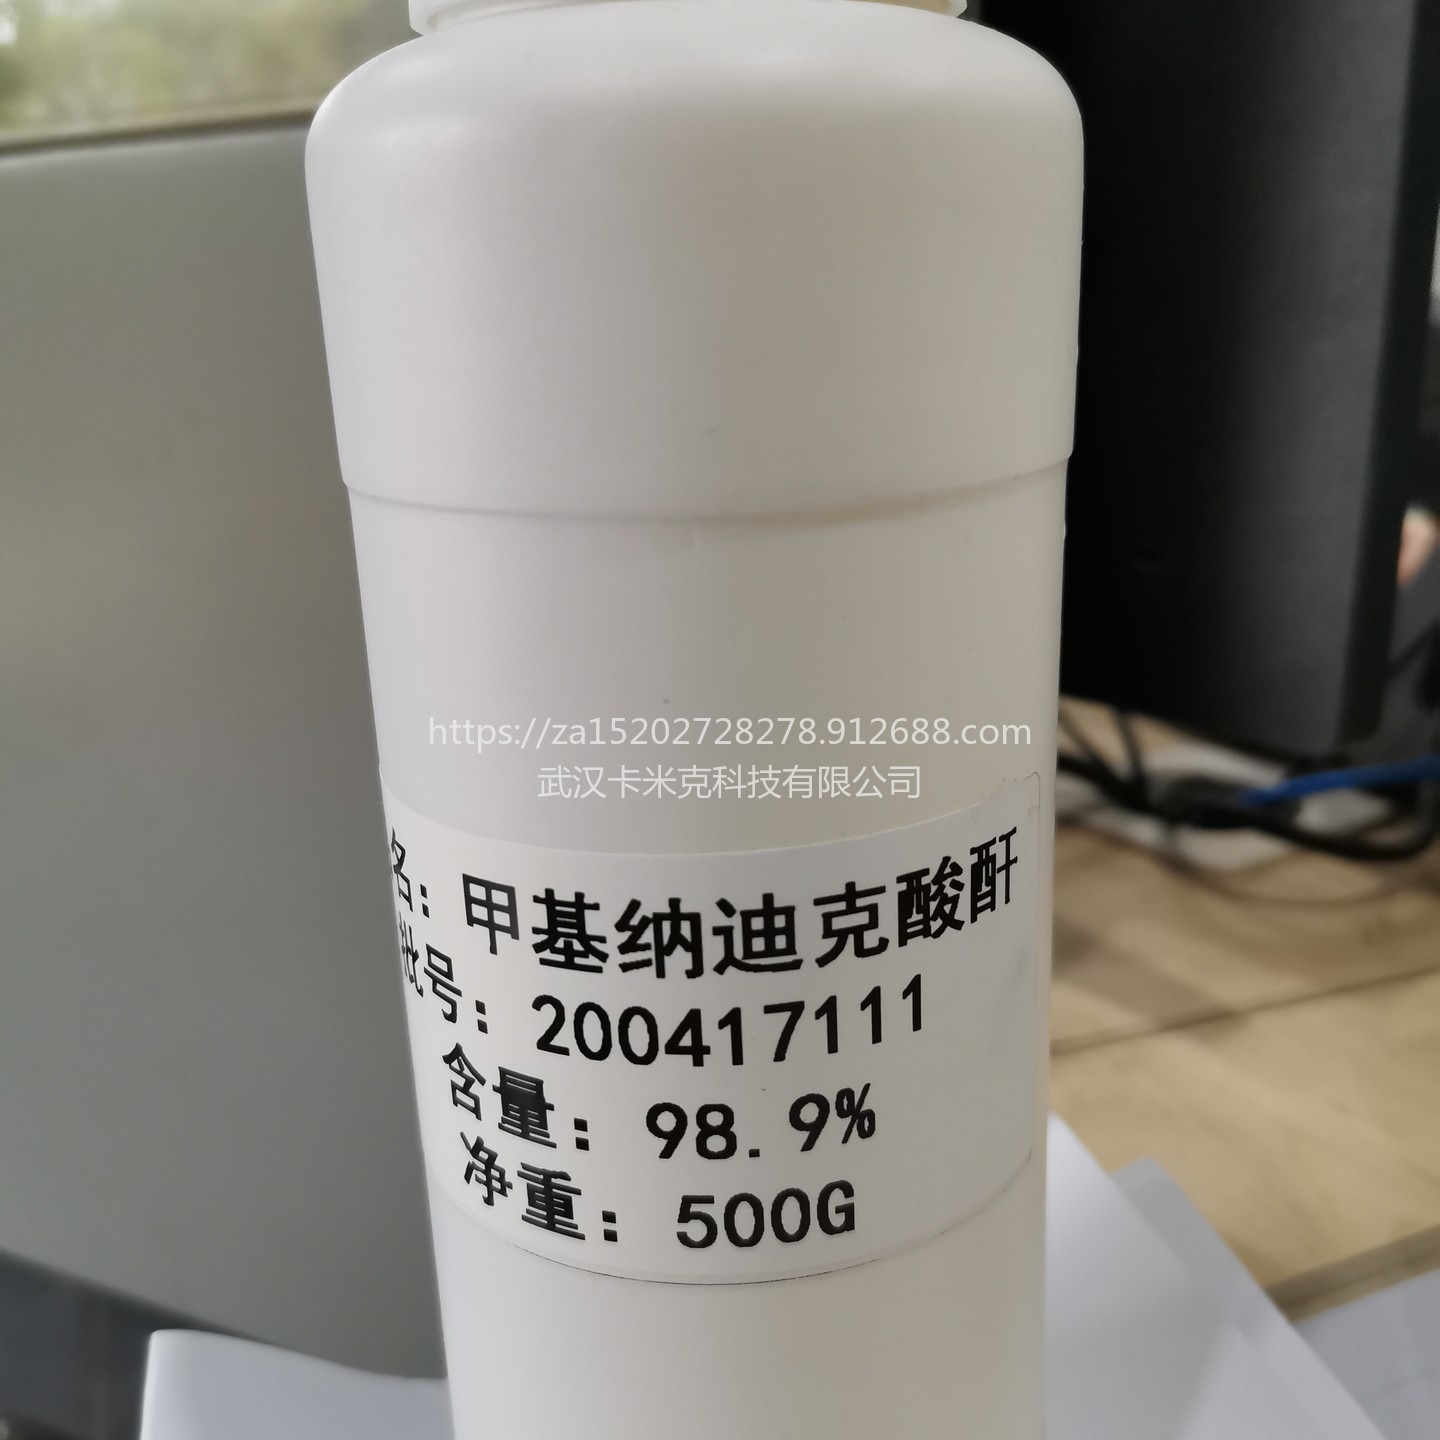 甲基纳迪克酸酐 原料 99% 25134-21-8 厂家 价格 现货kmk 固化剂 25KG/塑料桶